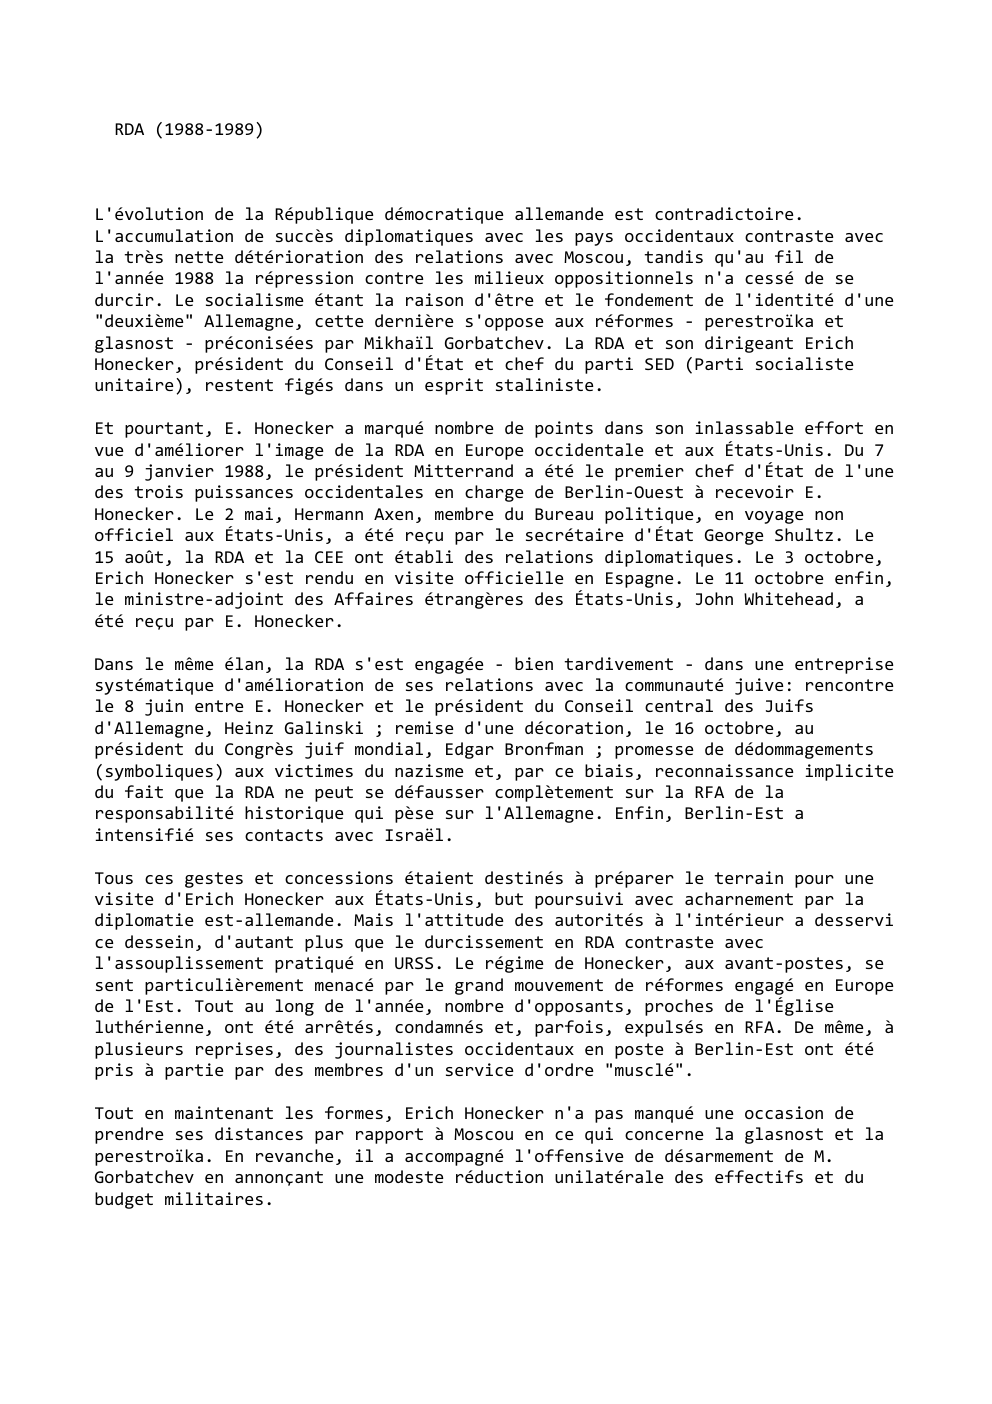 Prévisualisation du document RDA (1988-1989)

L'évolution de la République démocratique allemande est contradictoire.
L'accumulation de succès diplomatiques avec les pays occidentaux contraste avec...